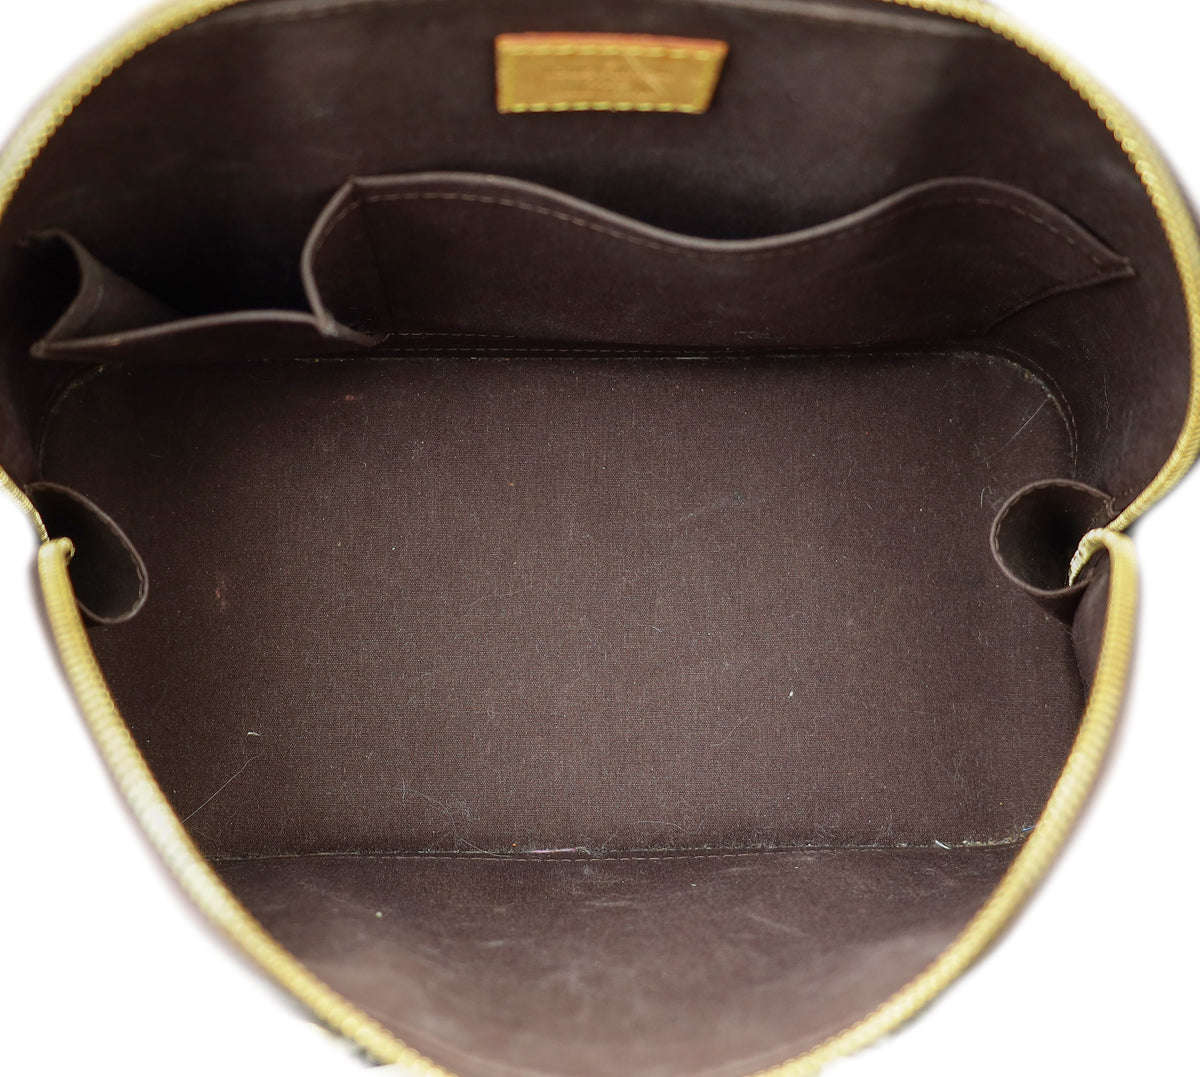 Louis Vuitton Amarante Monogram Vernis Alma PM Bag